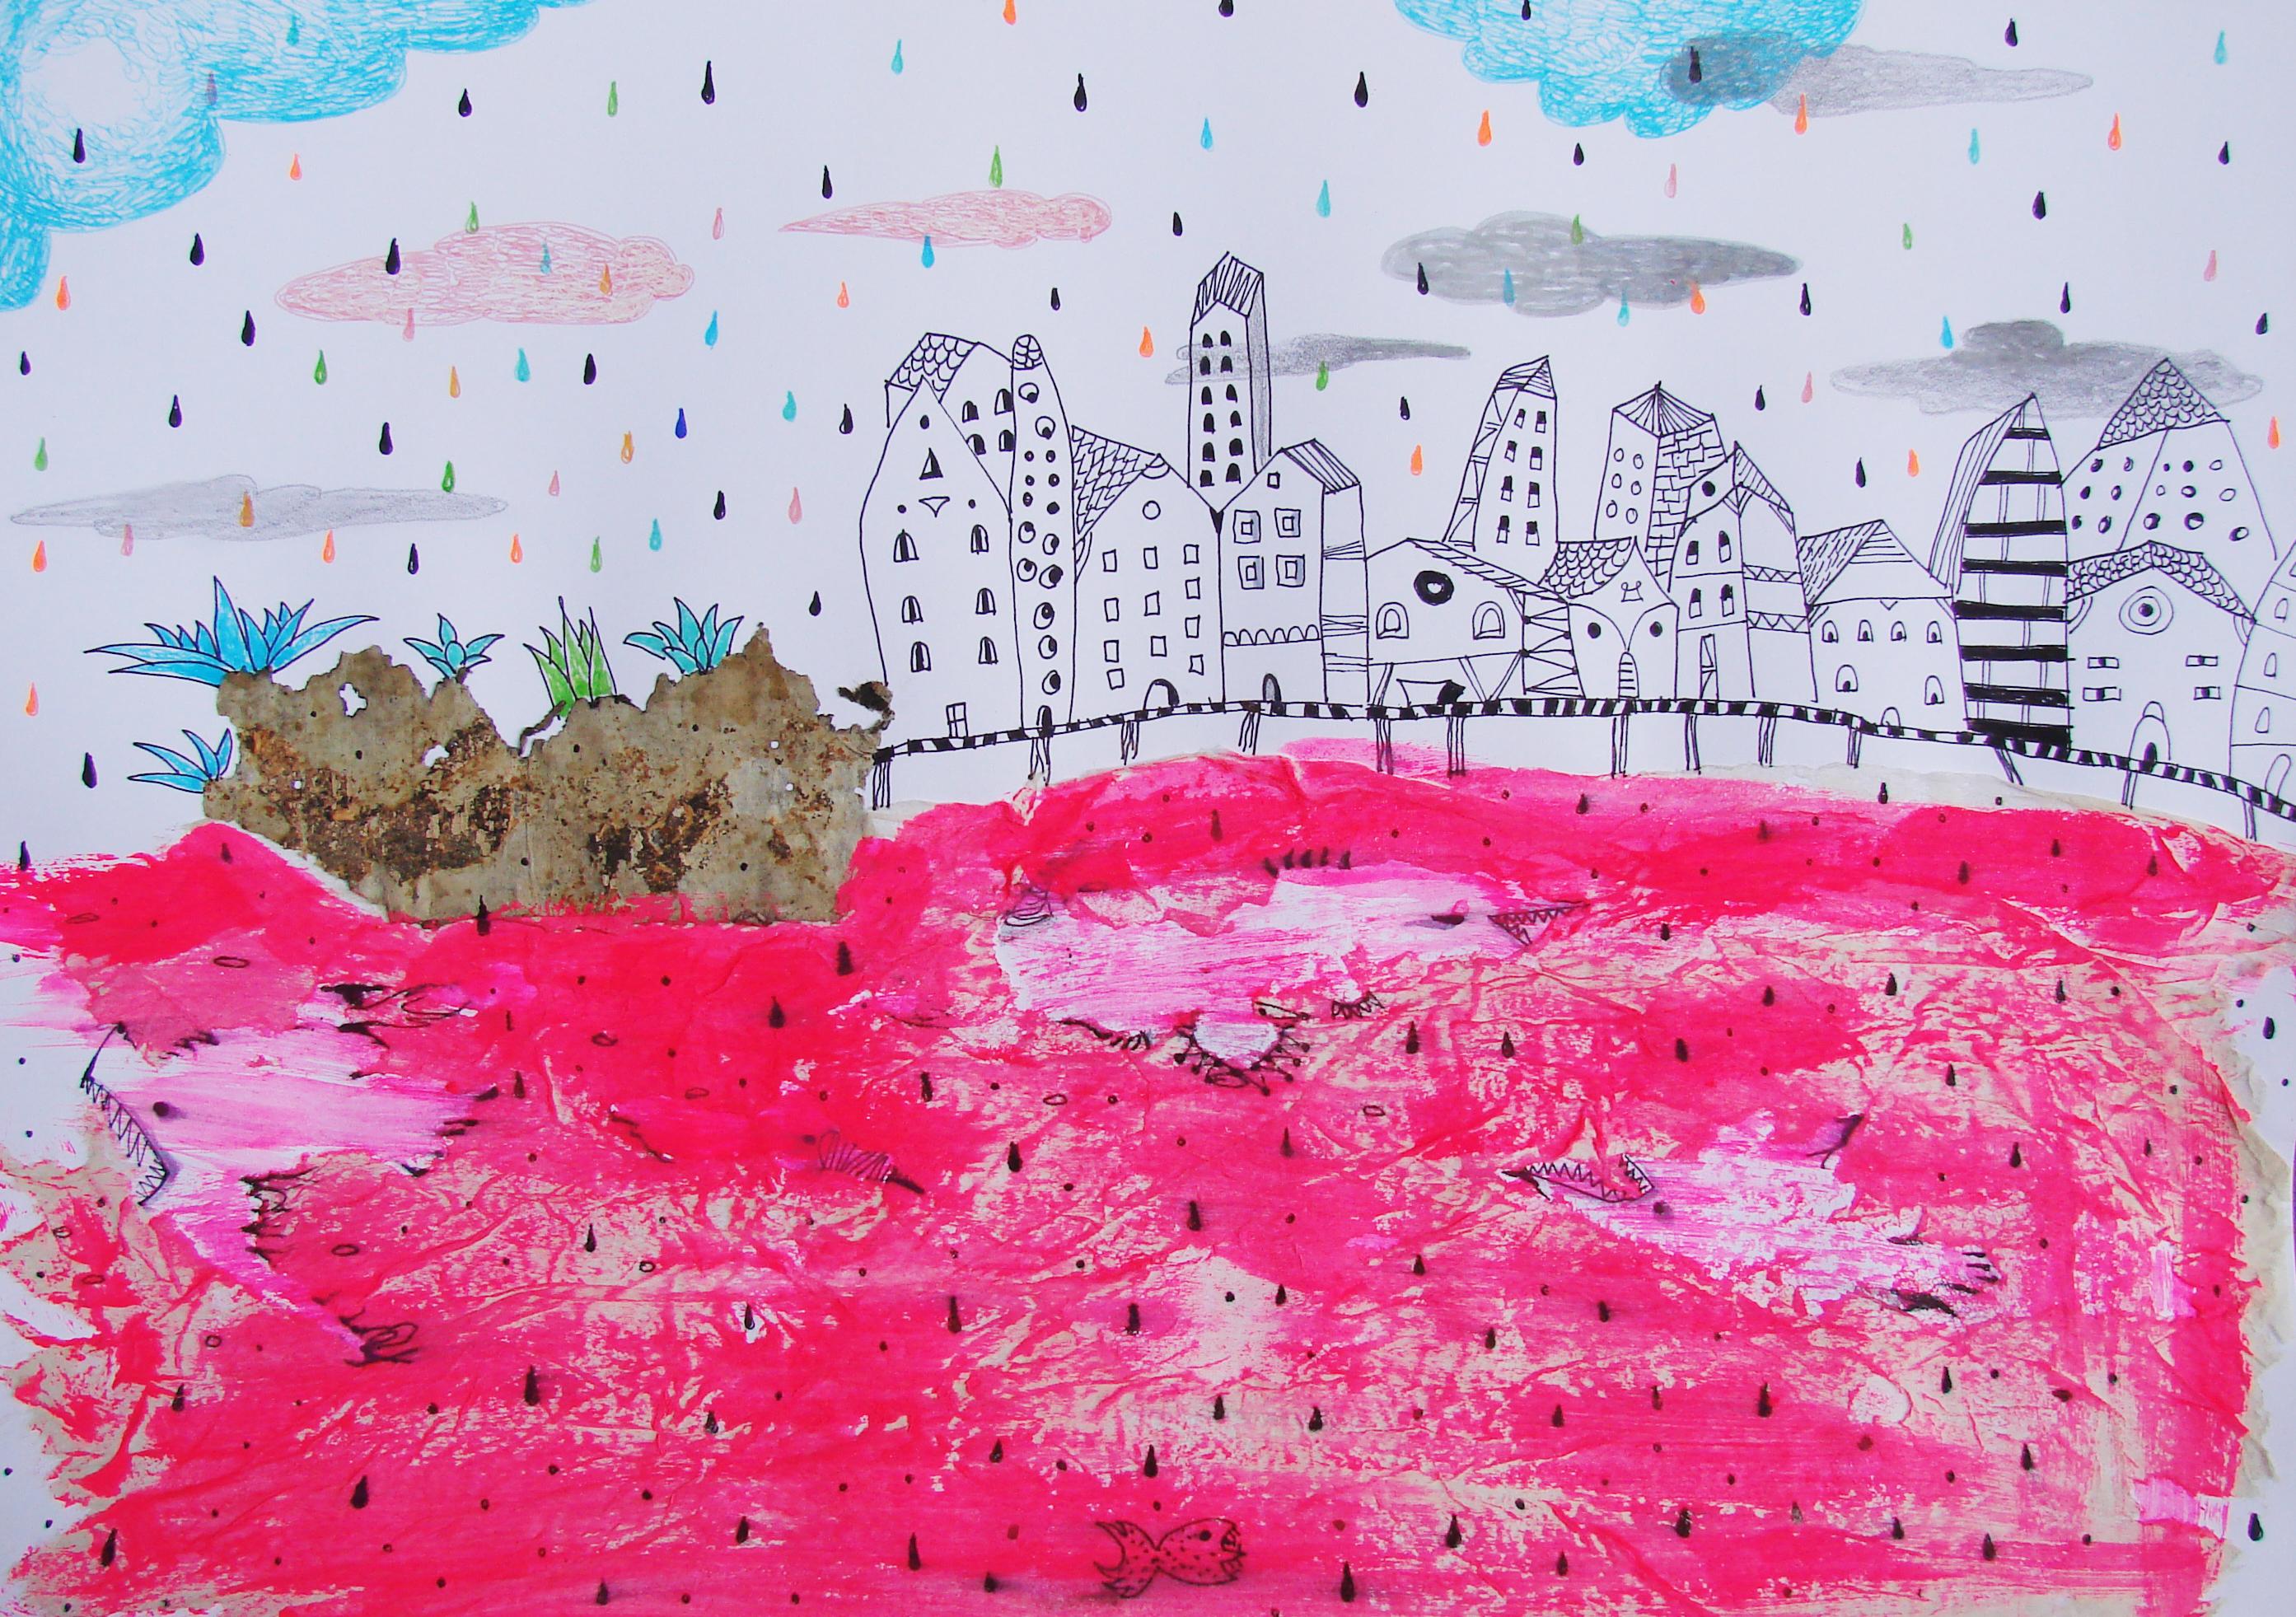 Rotes Meer - Zeitgenössisch, Zeichnung auf Papier, Rosa, traumhaft, figürlich